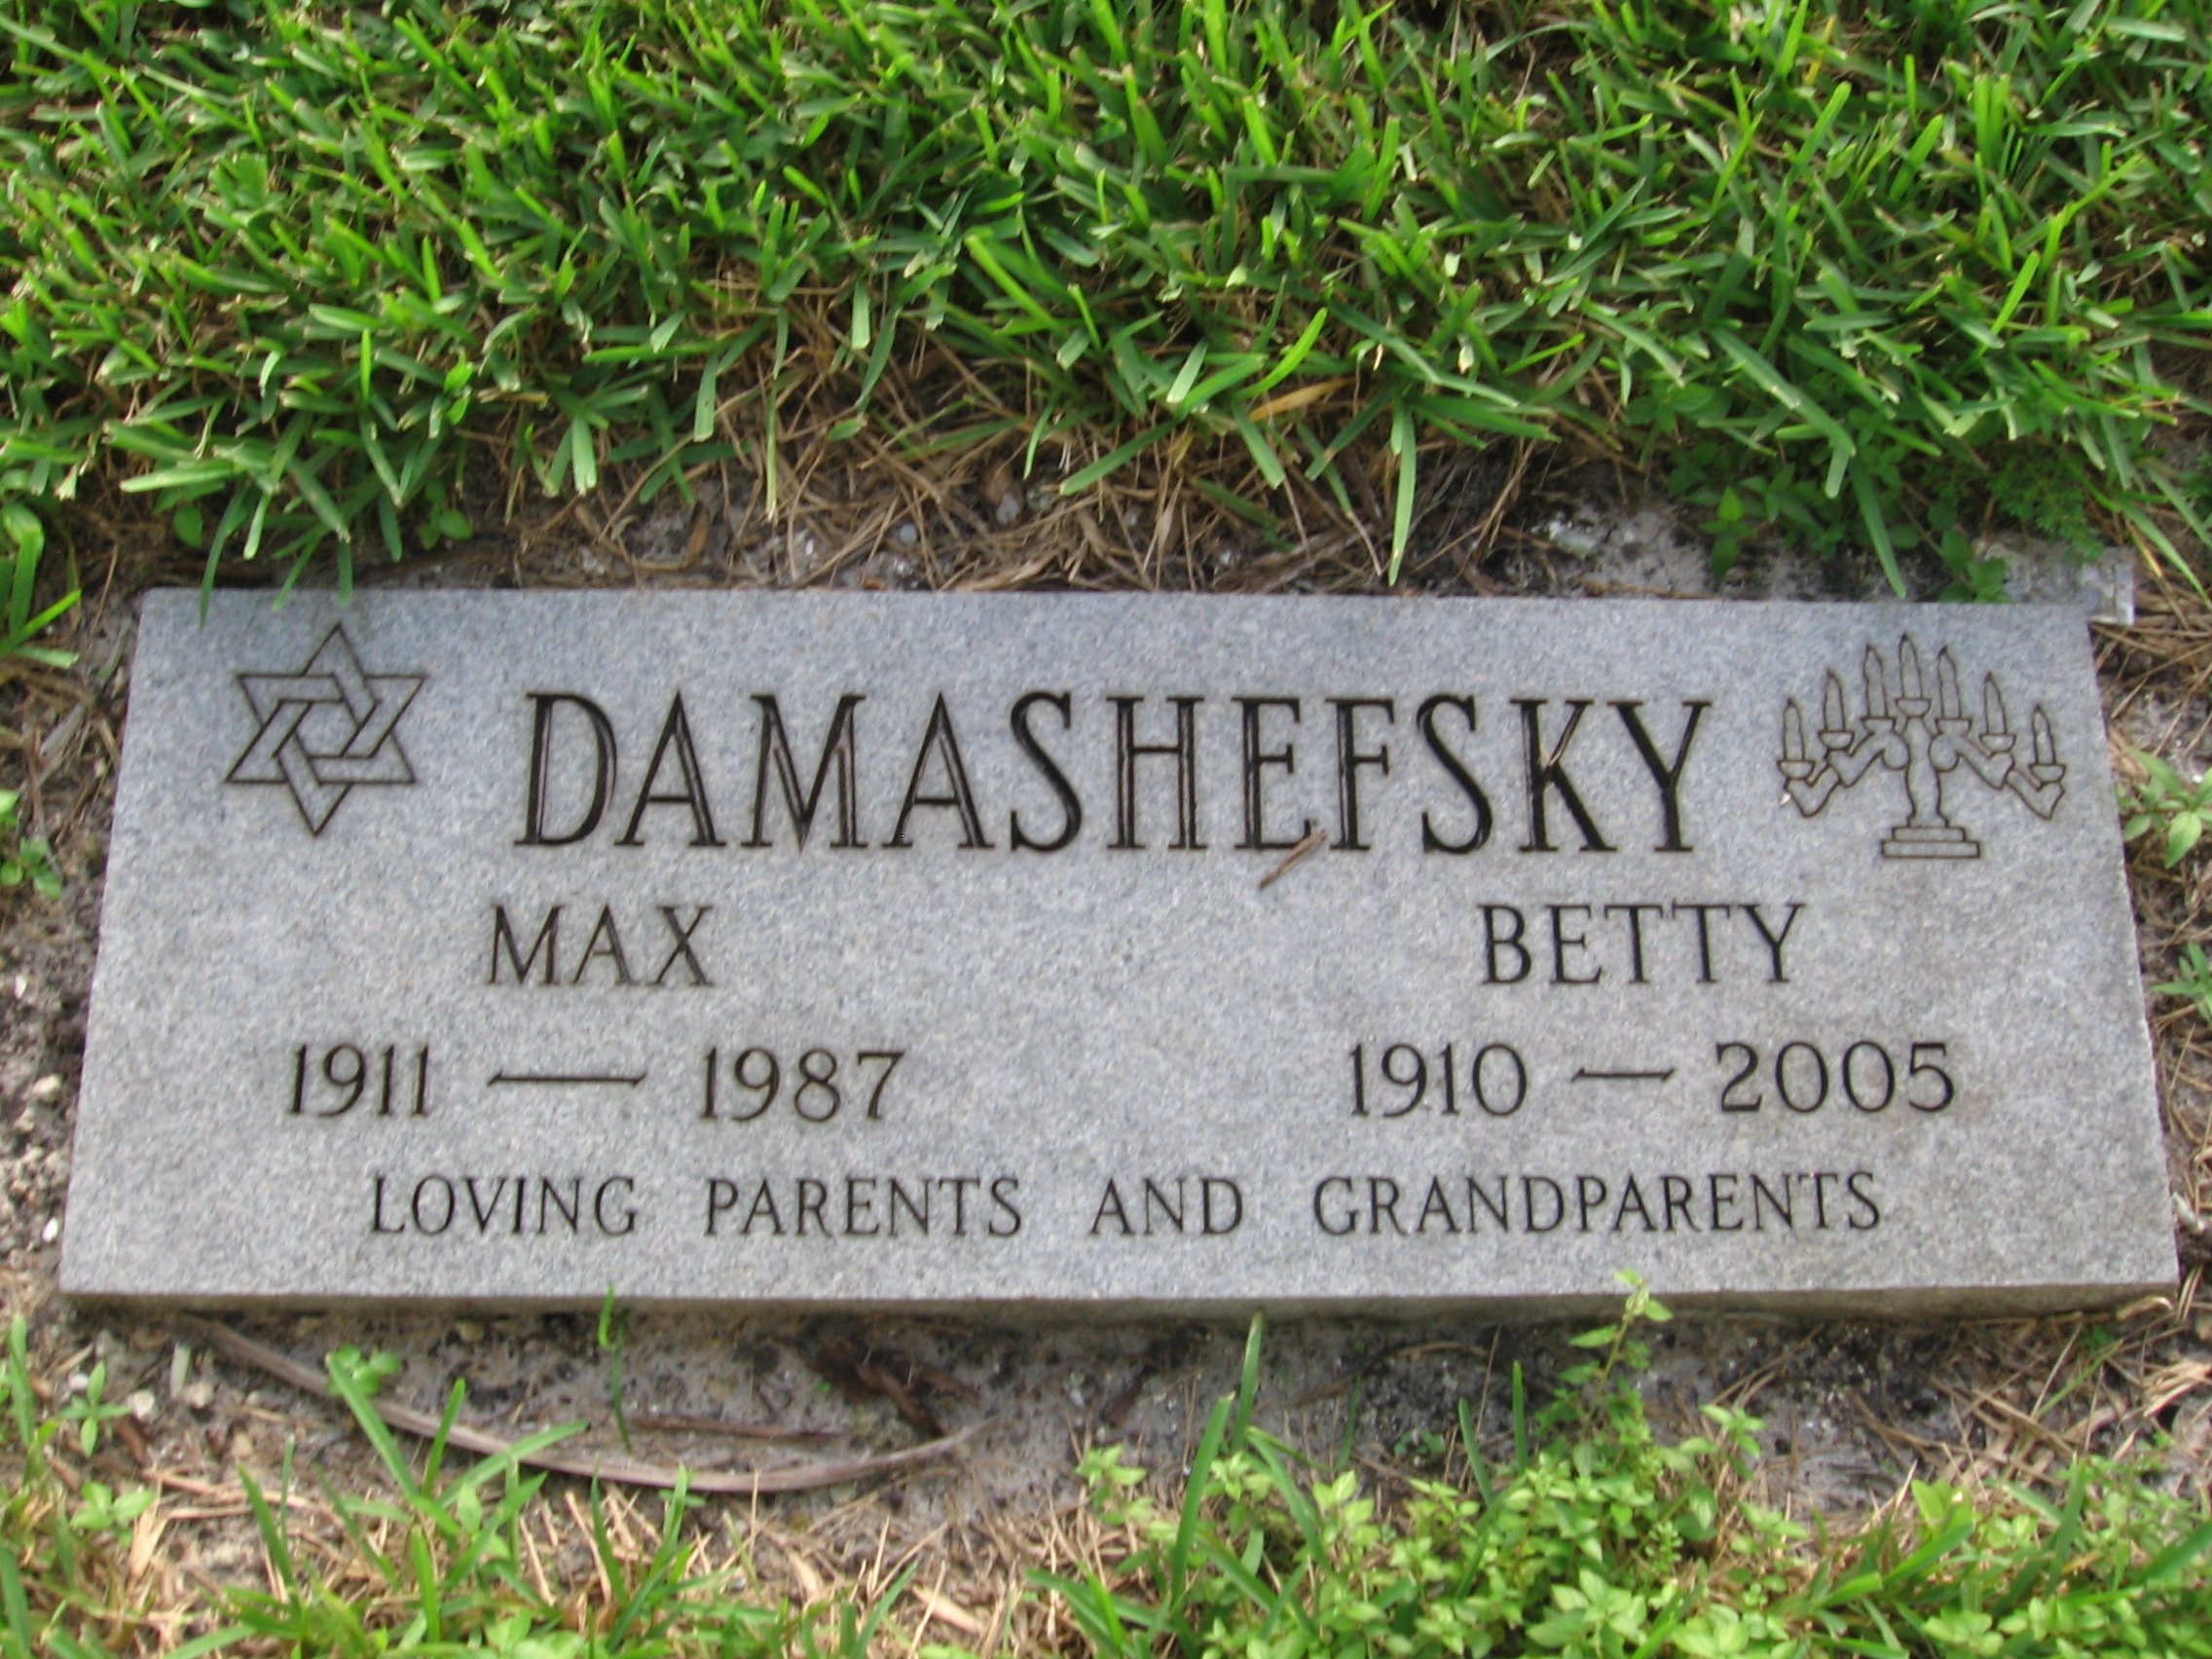 Betty Damashefsky